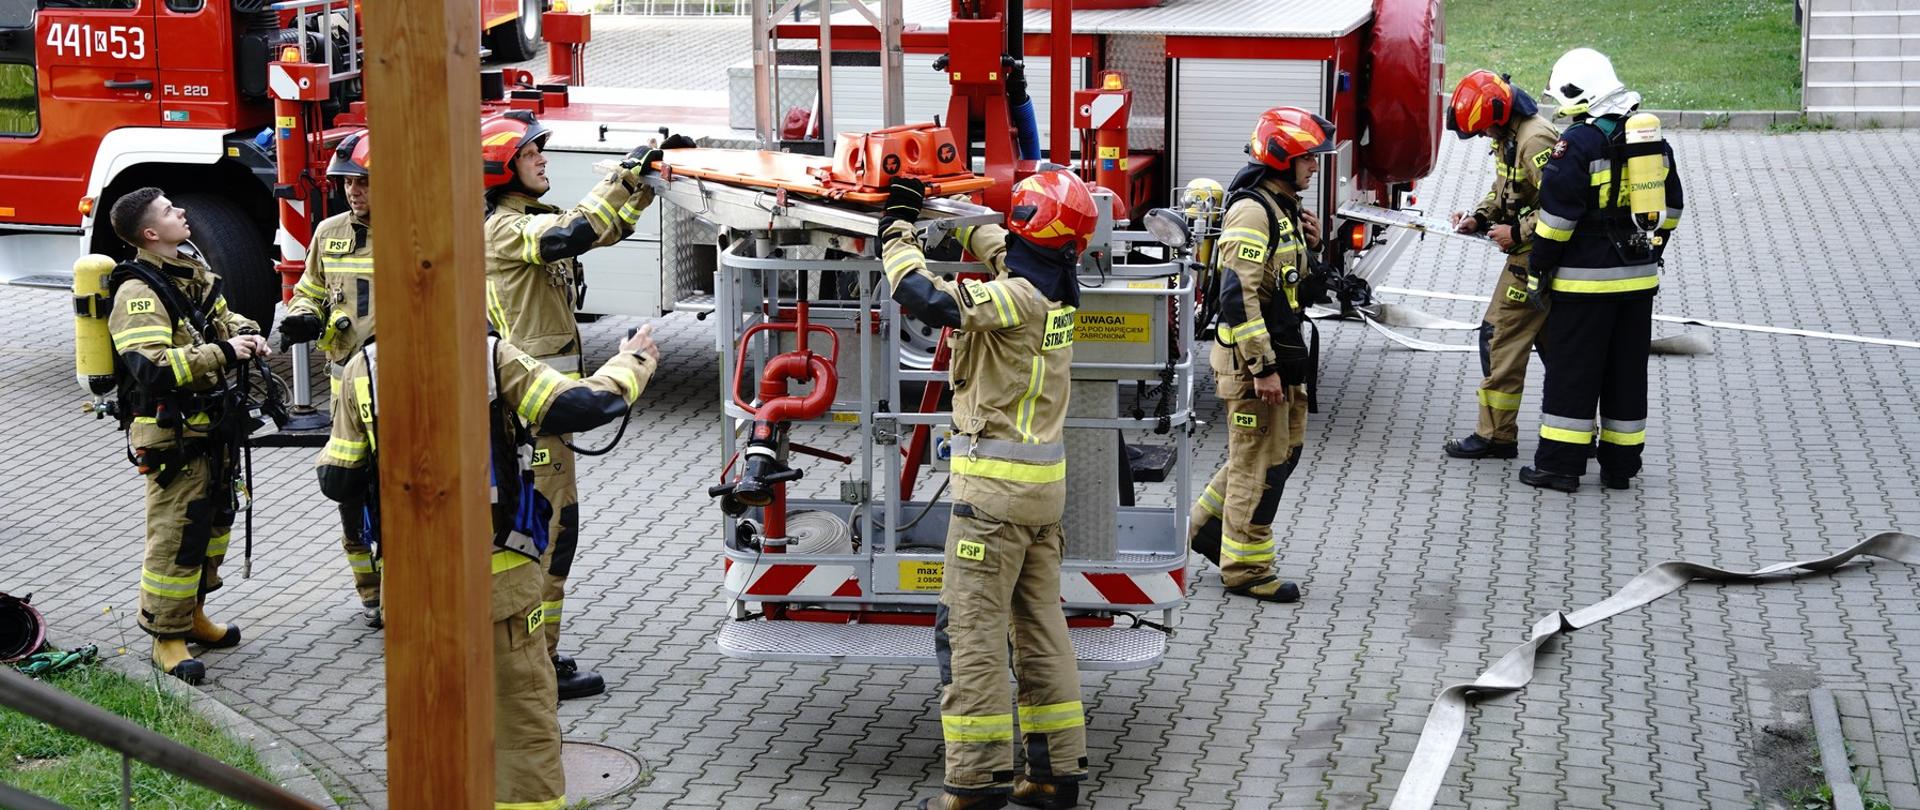 Na zdjęciu widoczni strażacy w ubraniach specjalnych koloru piaskowego w hełmach strażackich i sprzęt pożarniczy w tym w tle podnośnik hydrauliczny podczas ćwiczeń na szpitalu w Gorlicach.